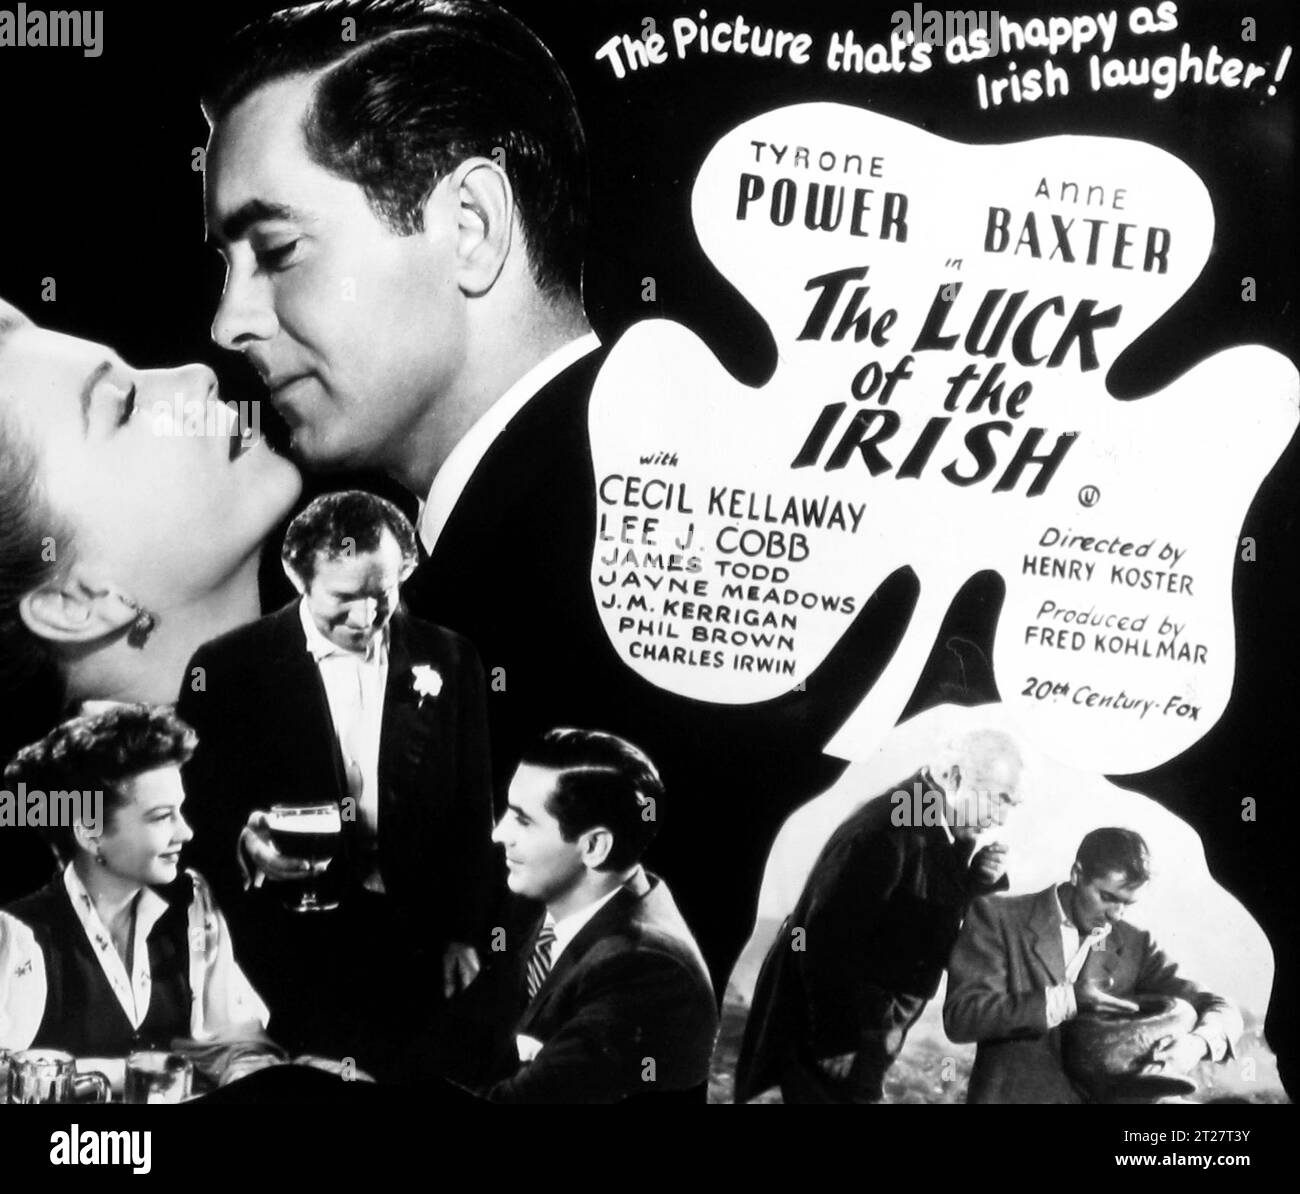 Publicité cinématographique pour 'The Luck of the Irishs' en 1948 Banque D'Images